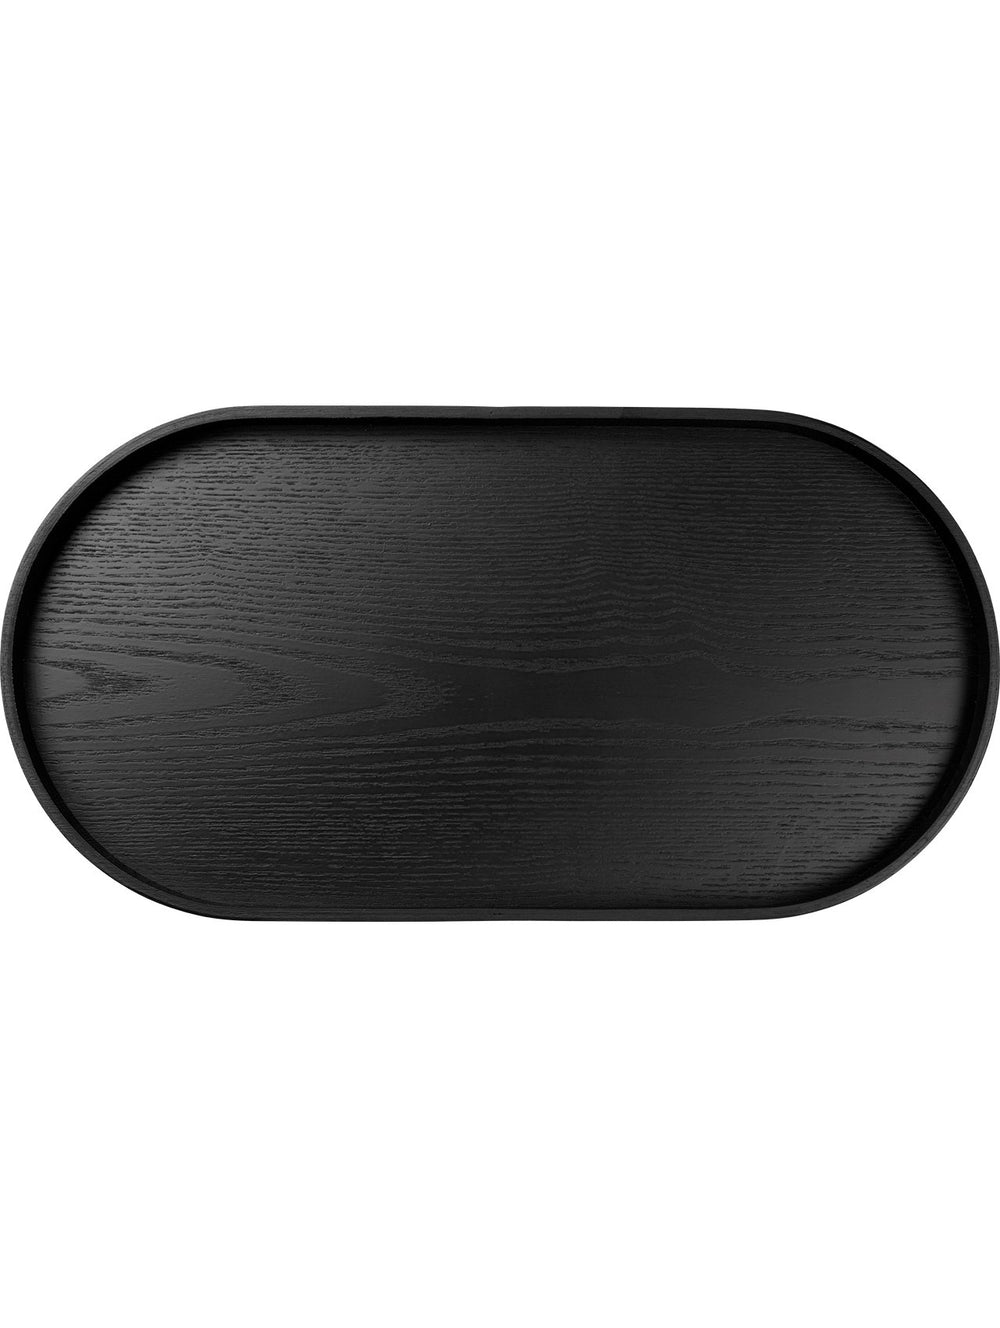 ASA - Holztablett oval, schwarz, Weidenholz, 44x22,5cm-ASA-53795970